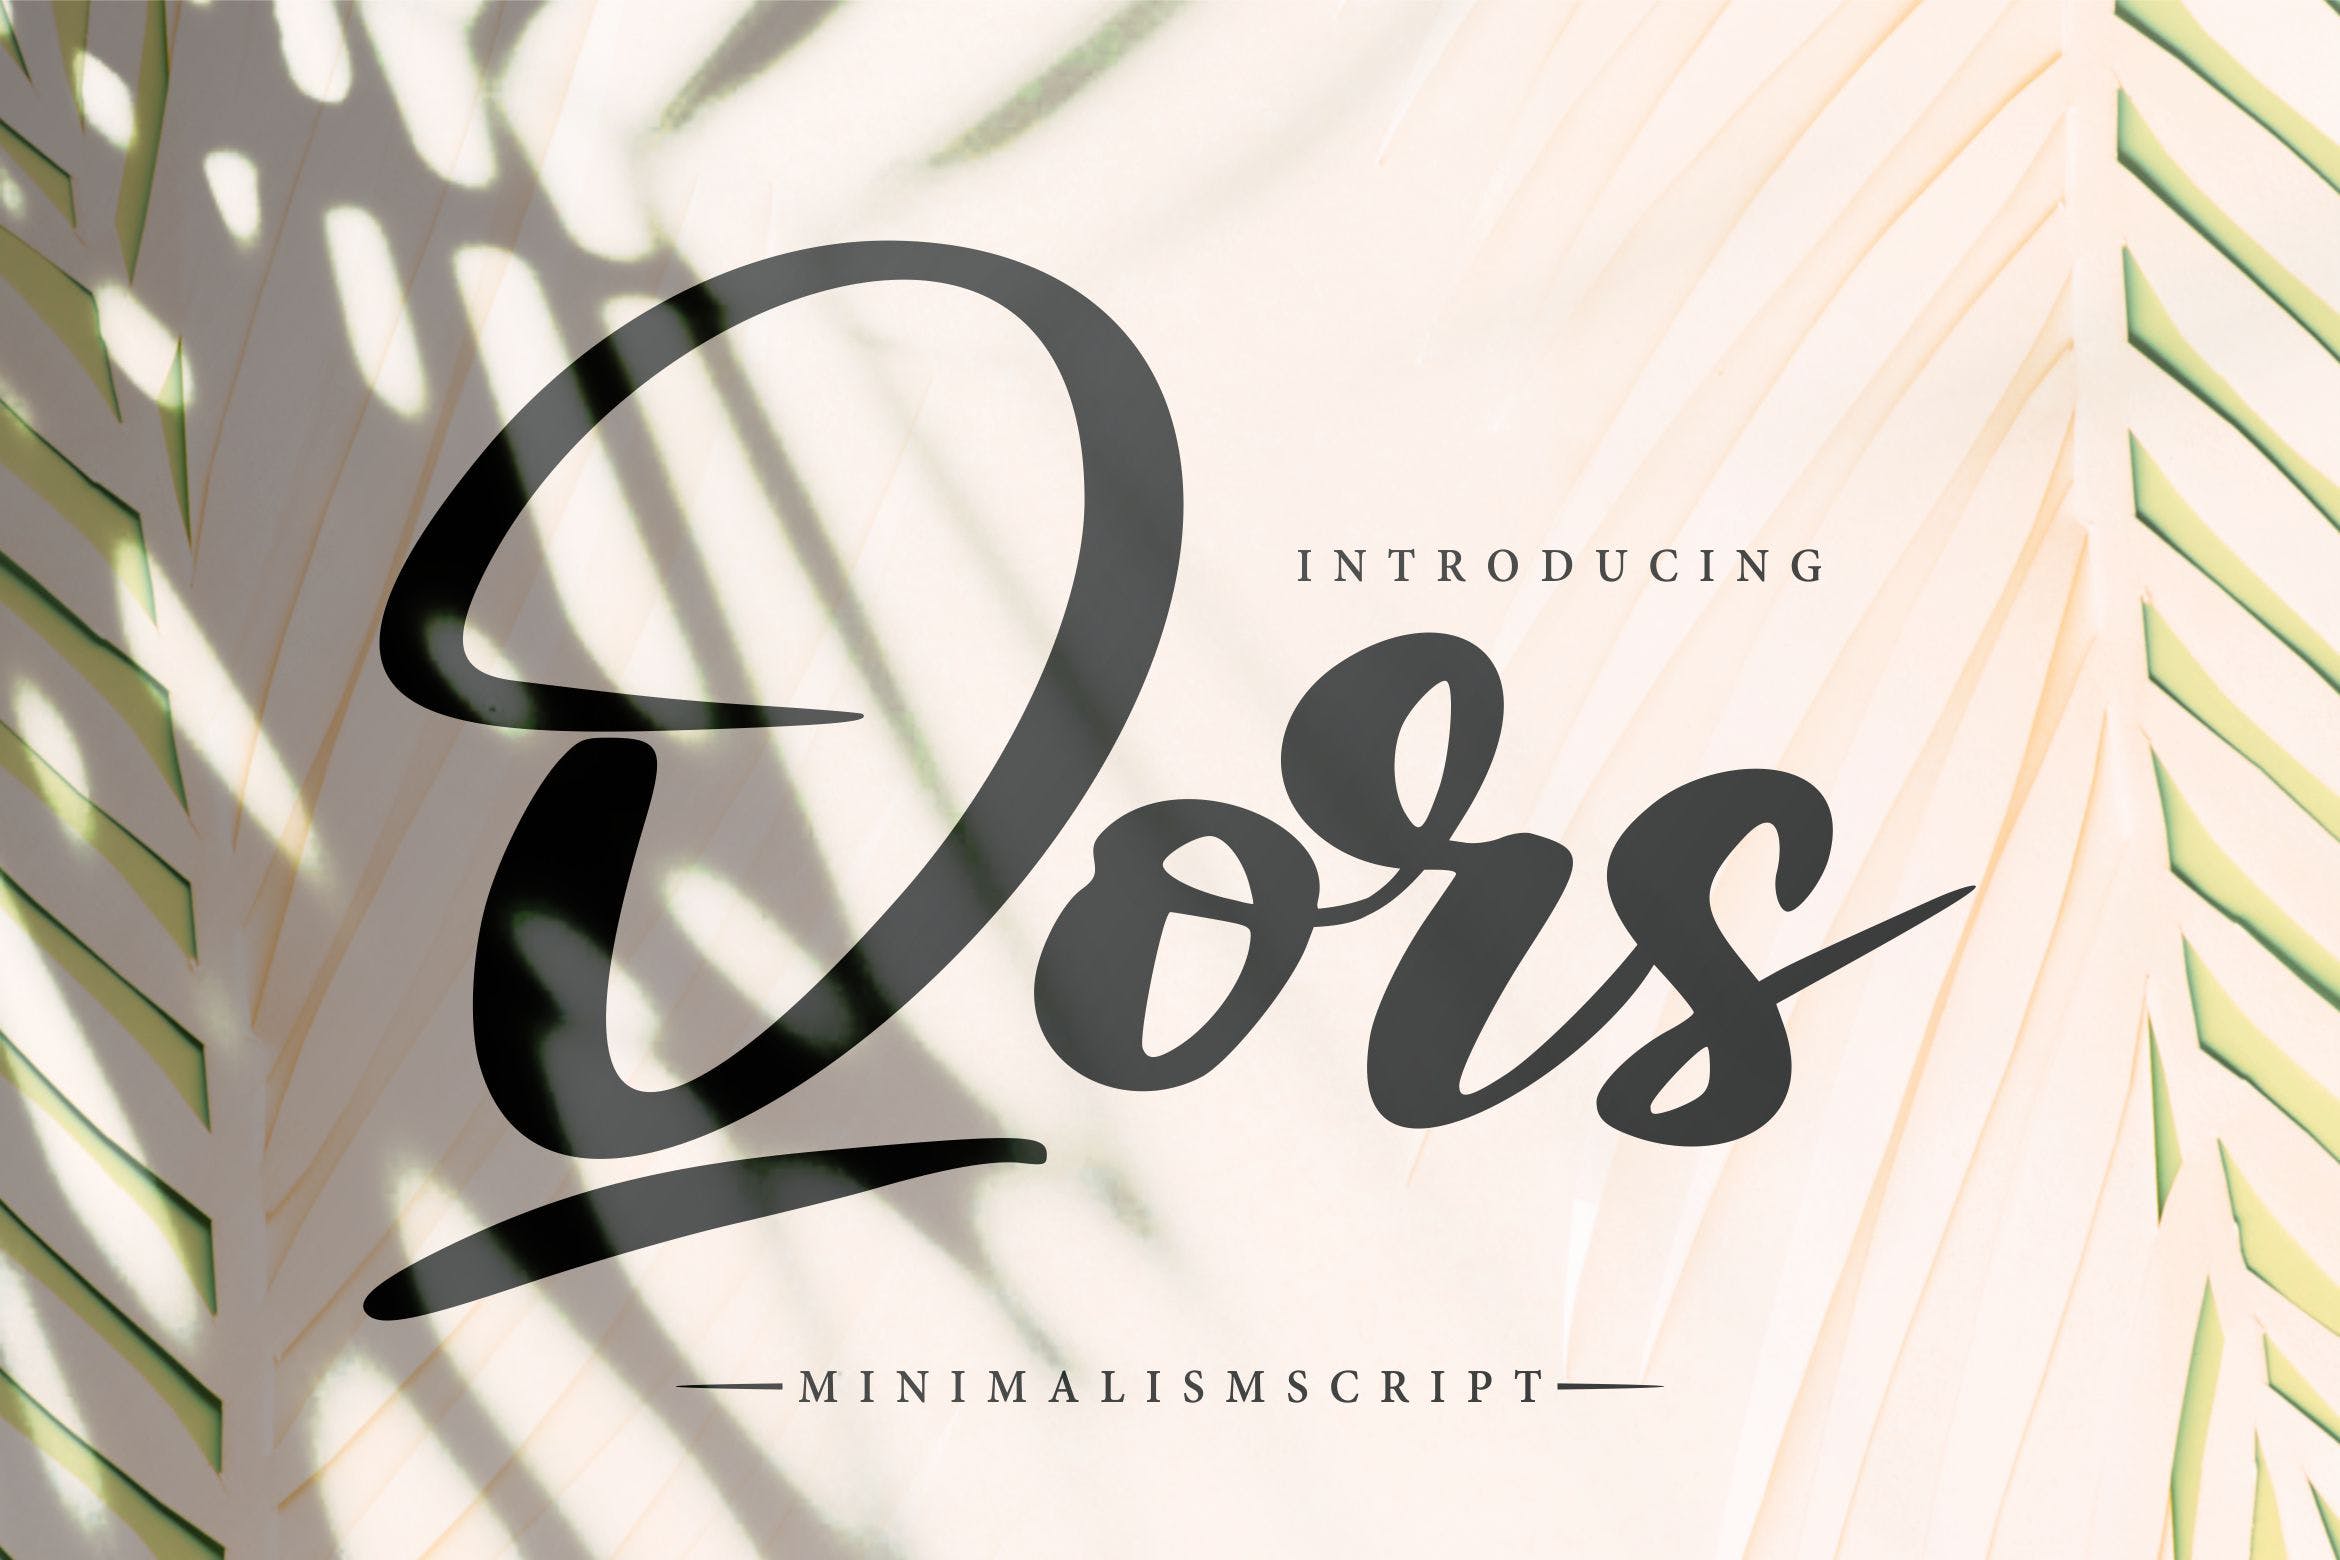 极简主义排版设计风格英文书法字体蚂蚁素材精选 Qors | Minimalism Script Font插图